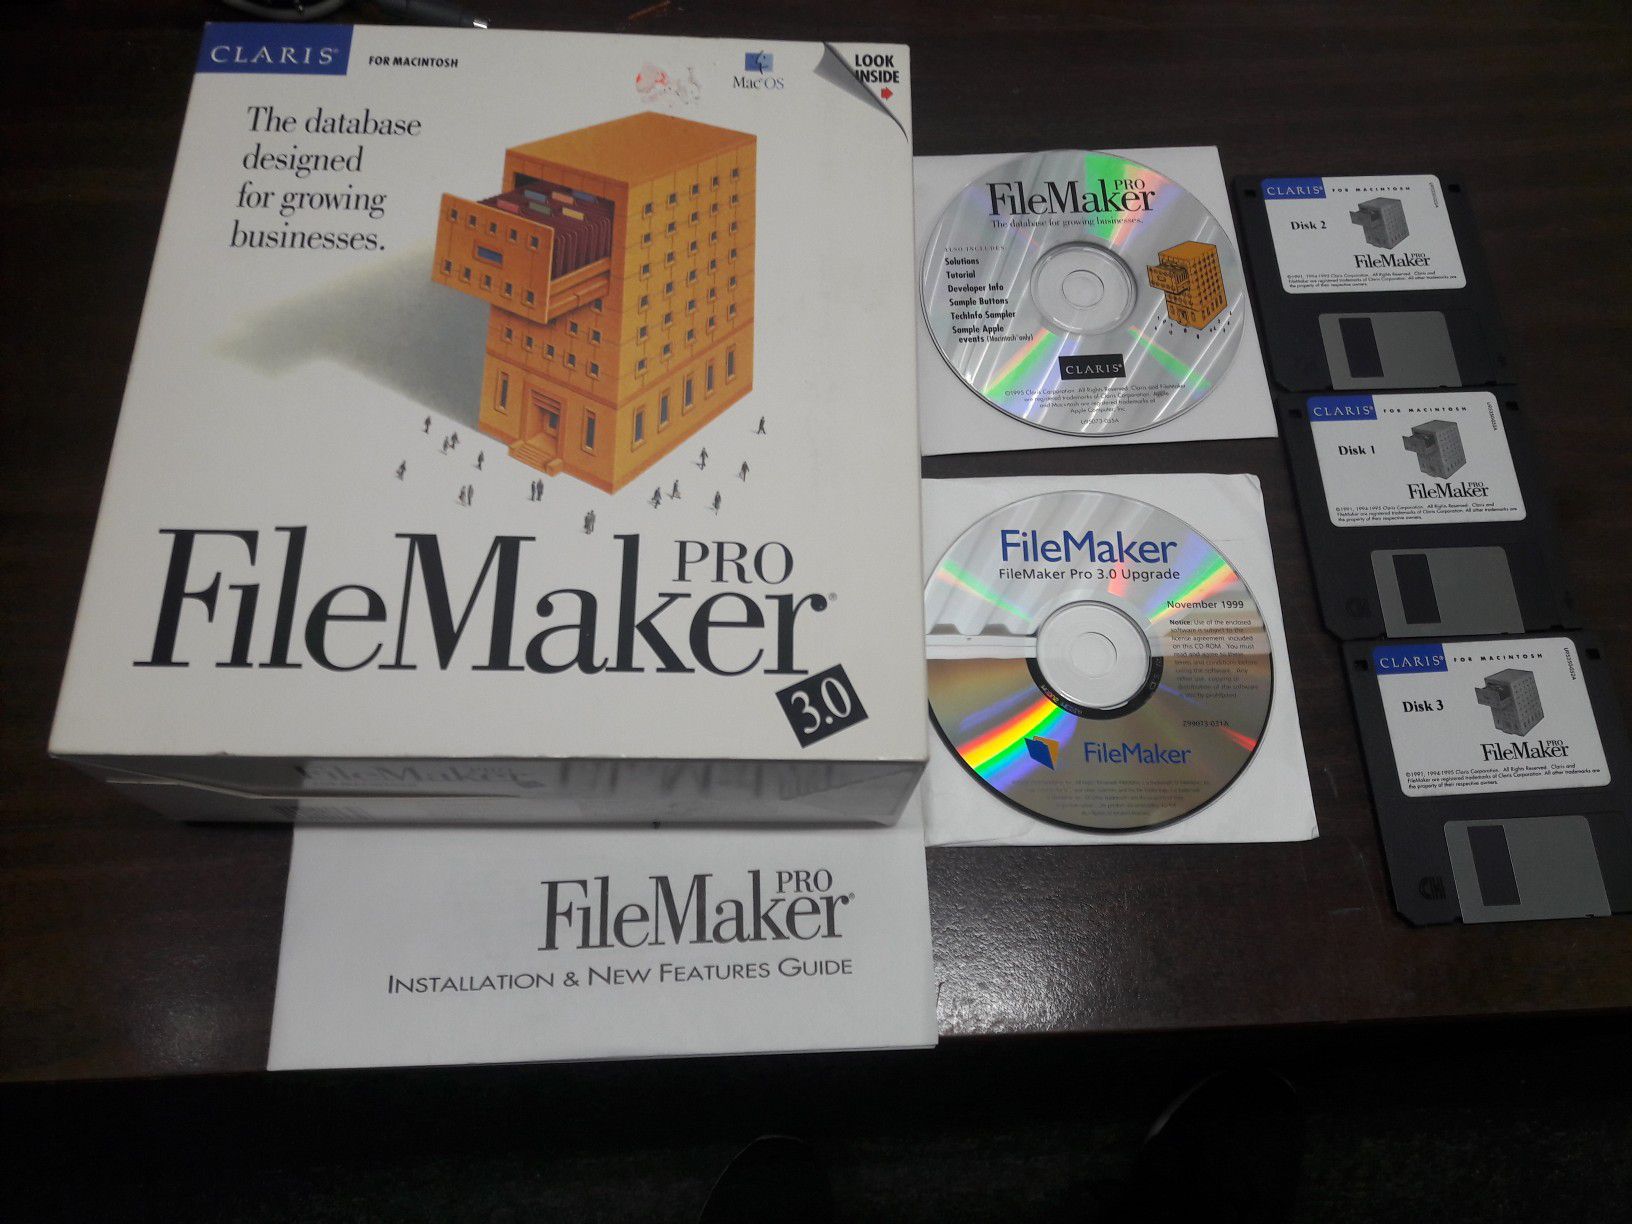 FileMaker Pro v 3.0 pack